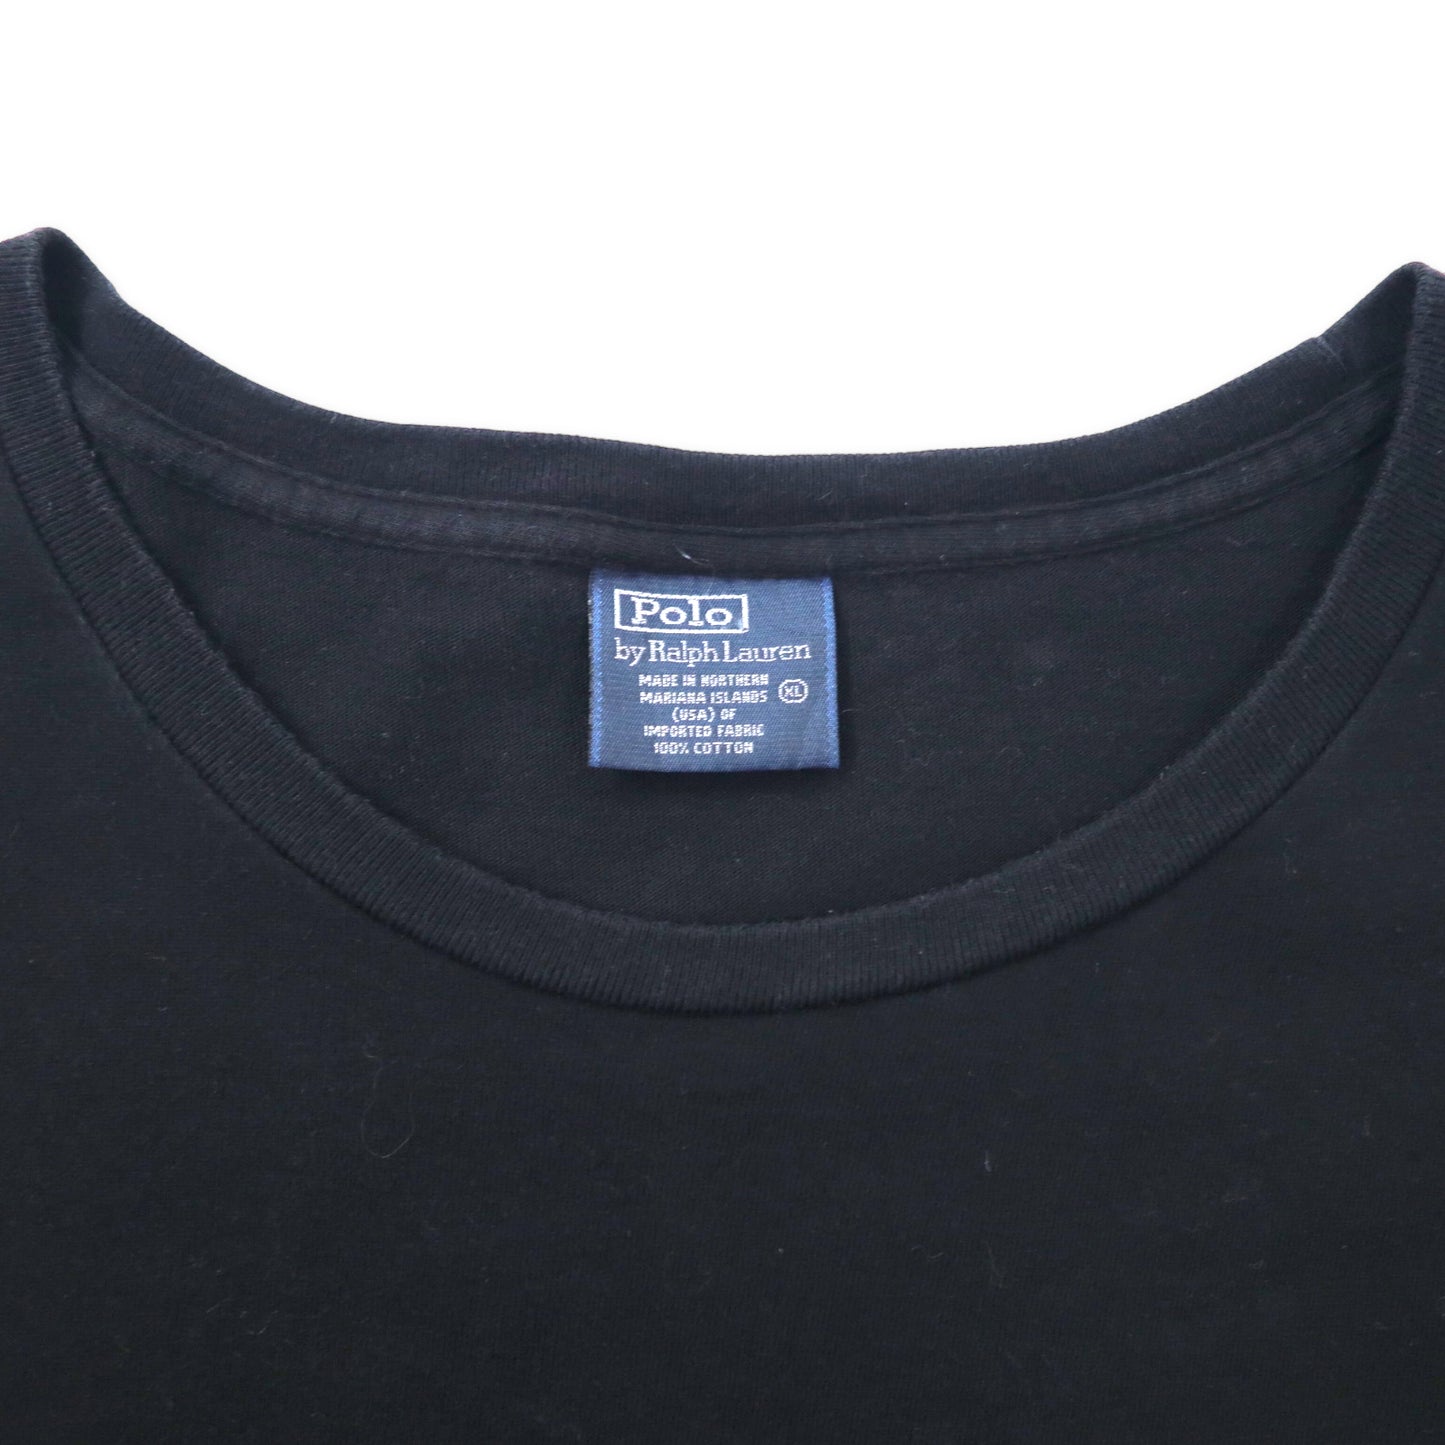 Polo by Ralph Lauren ポケットTシャツ XL ブラック コットン スモールポニー刺繍 ビッグサイズ